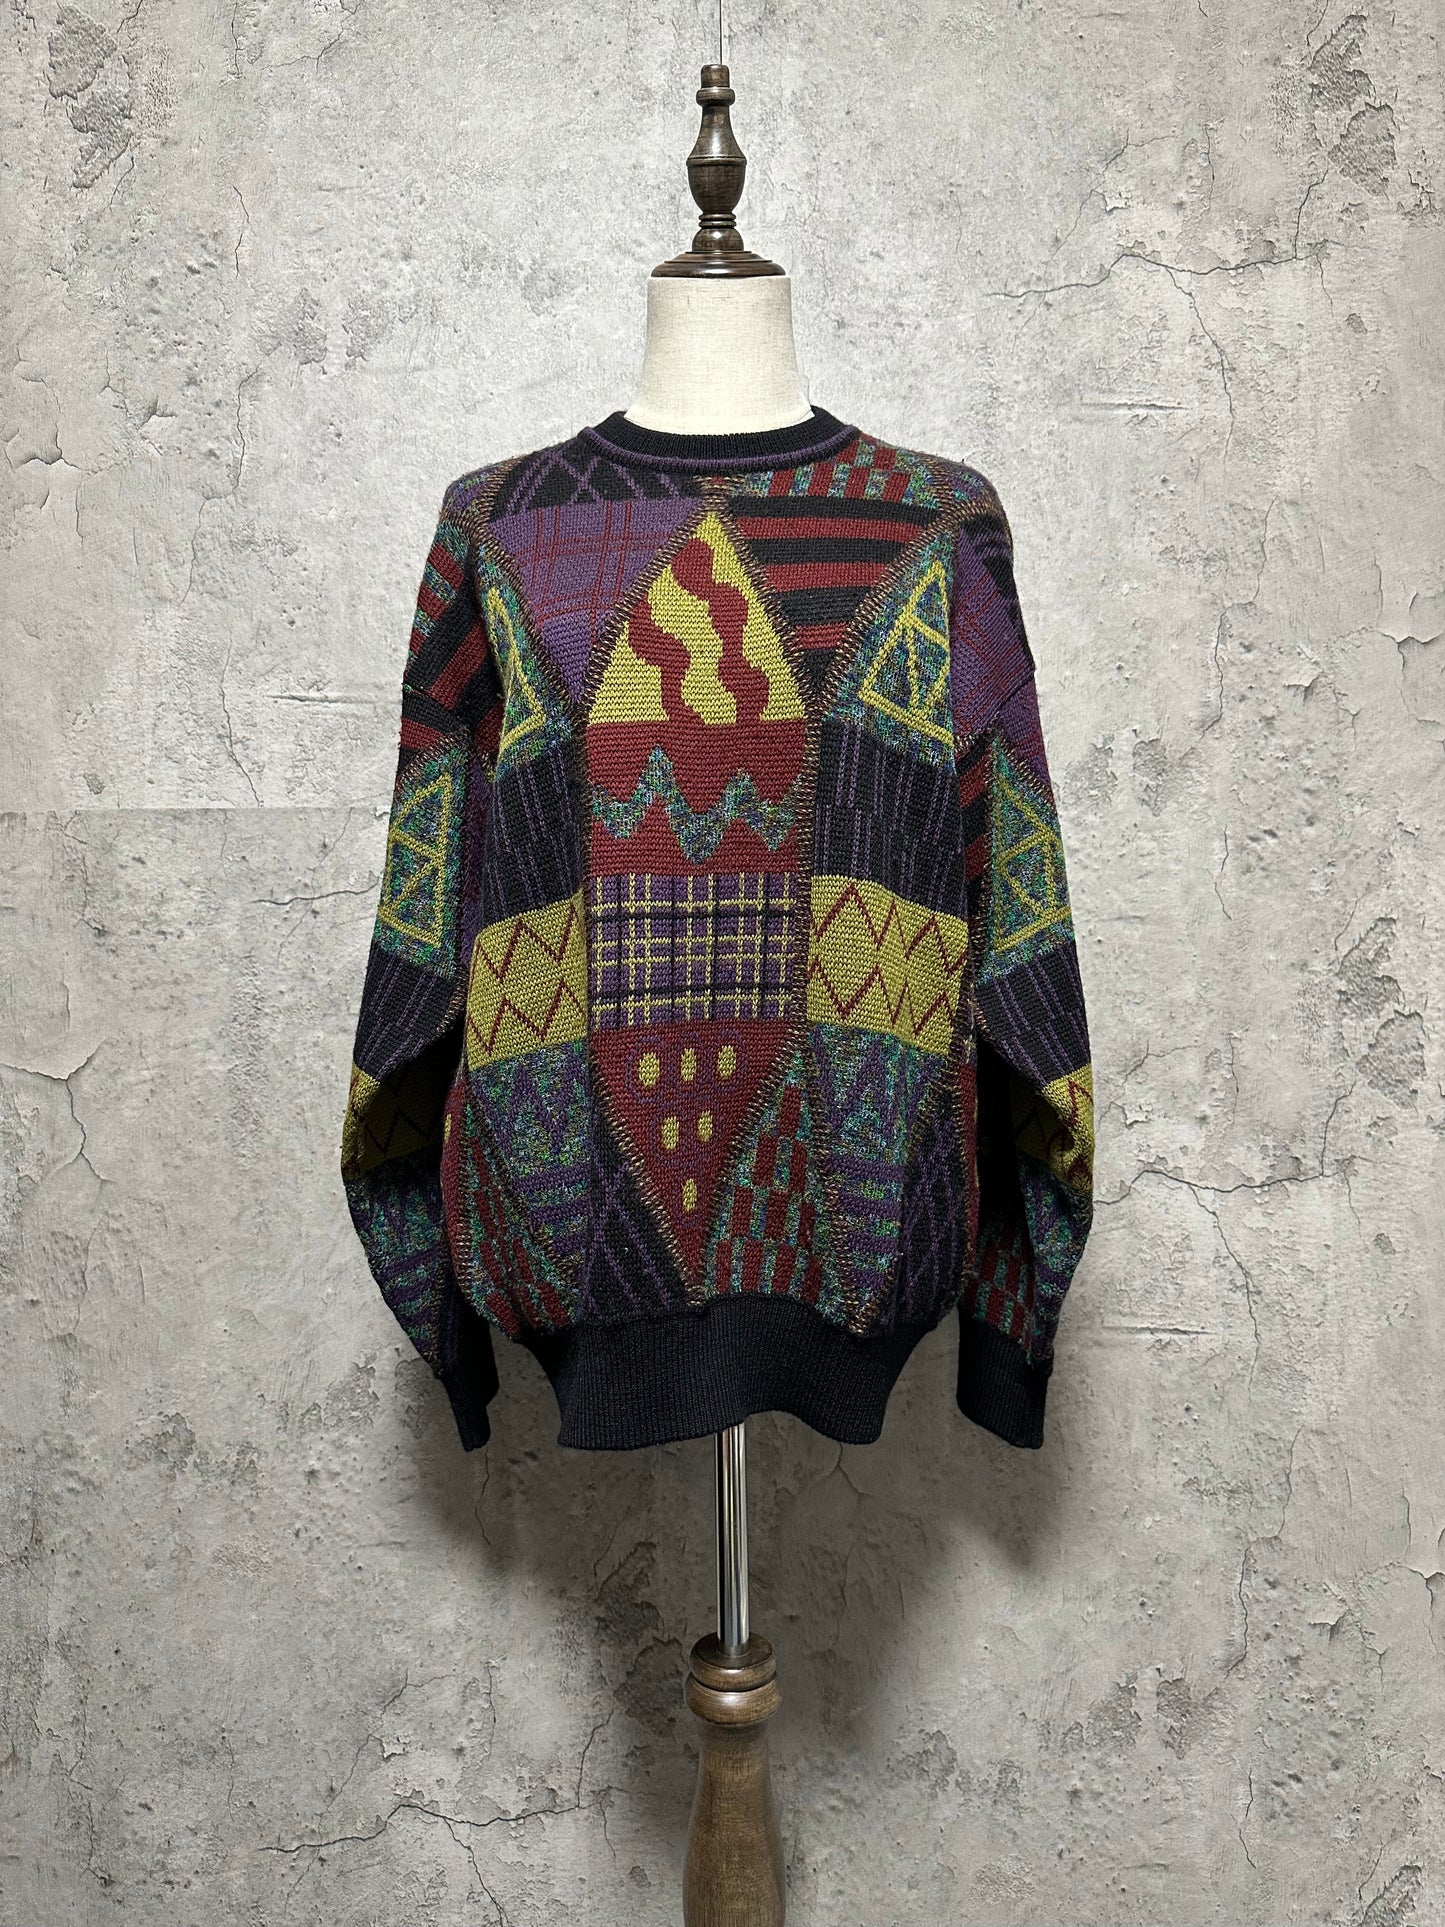 Whole pattern sweater